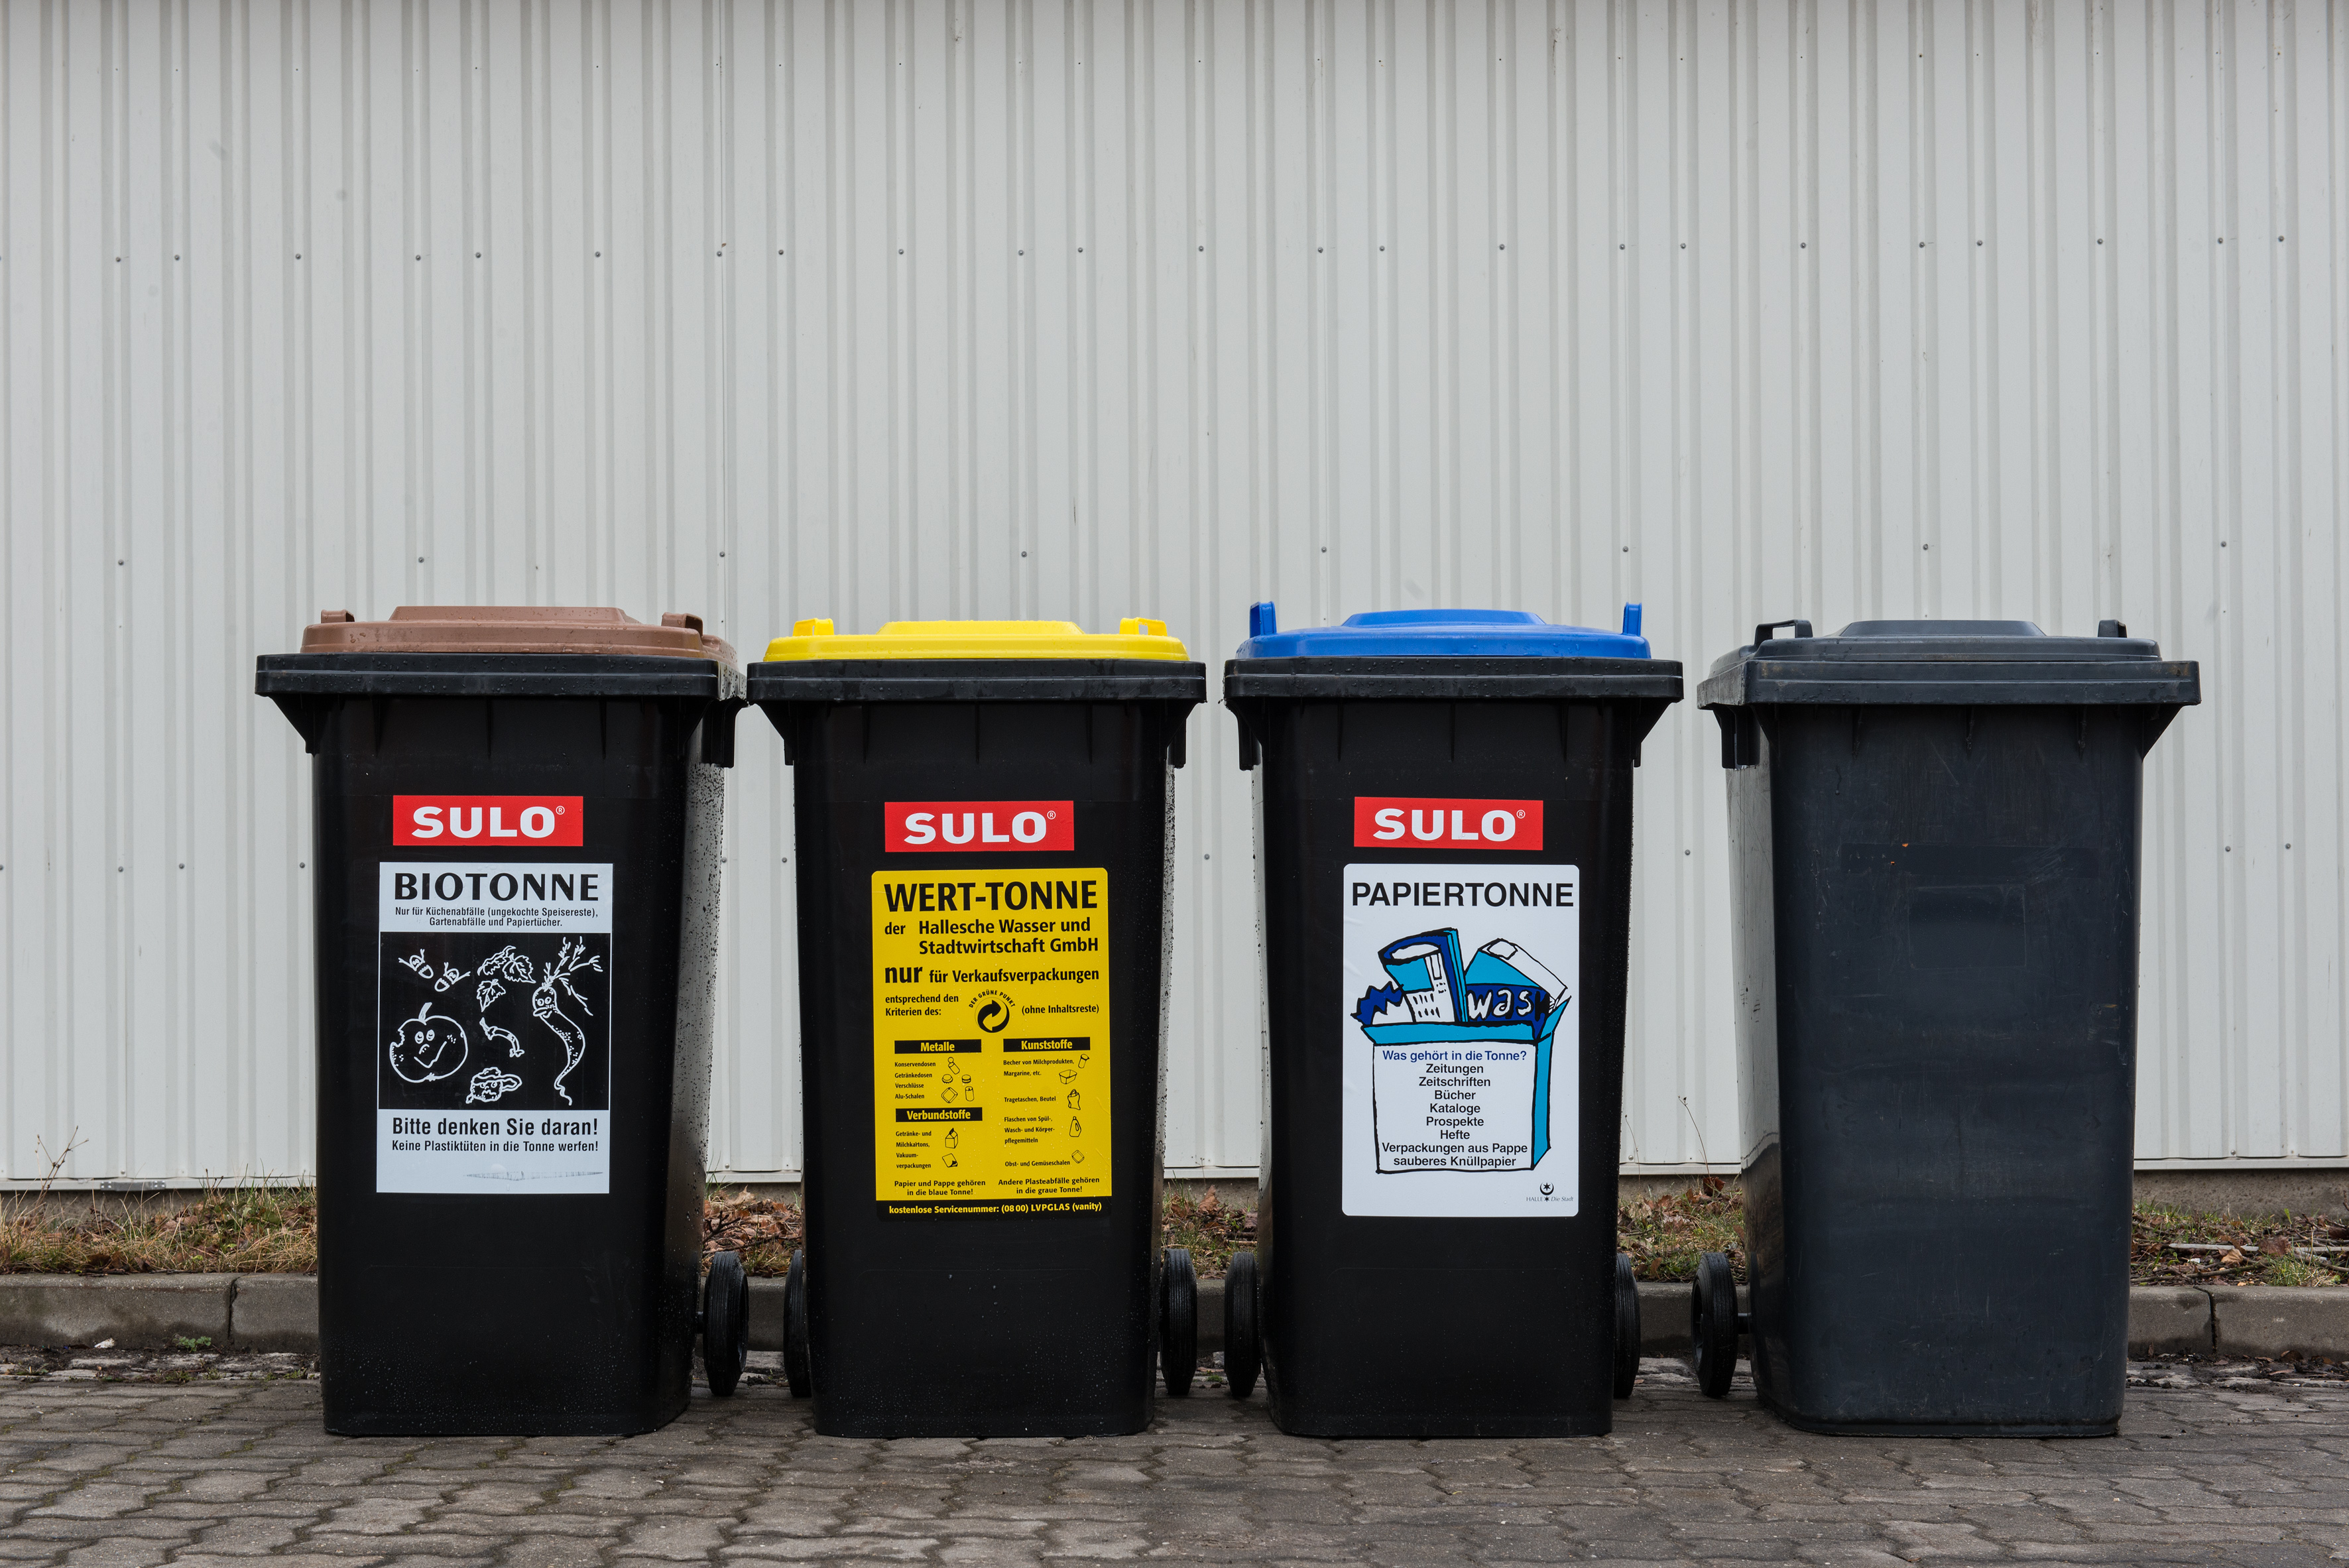 Auf dem Foto stehen vier Mülltonnen in einer Reihe: blau, gelb, grau und braun.